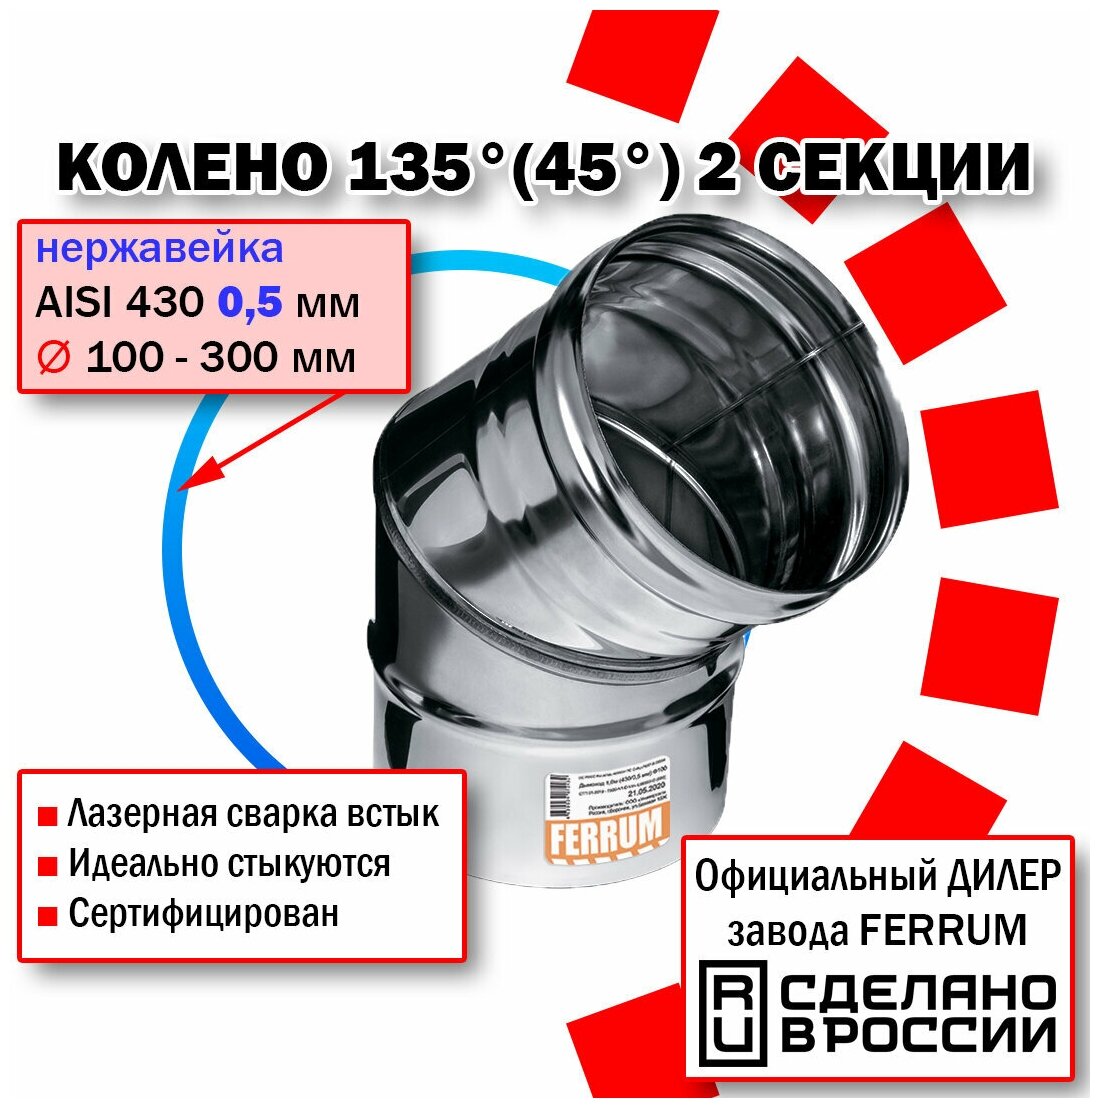 Колено угол 135° Ф200 (430/0,5 мм) нержавейка Феррум - фотография № 1